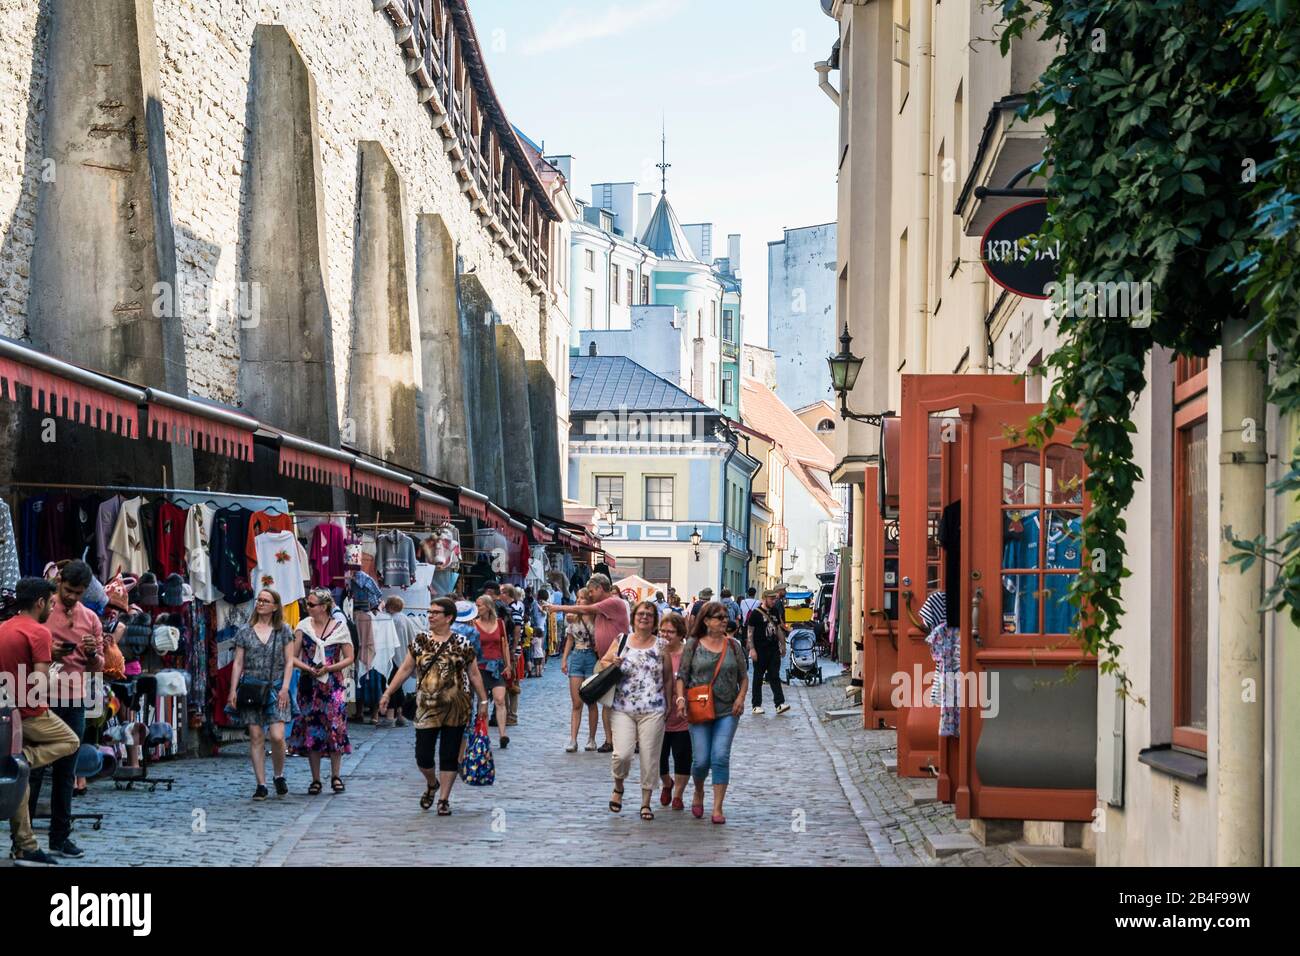 Estland, Tallinn, Altstadt, mittelalterliche Stadtmauer, Marktstände, Touristen Stock Photo